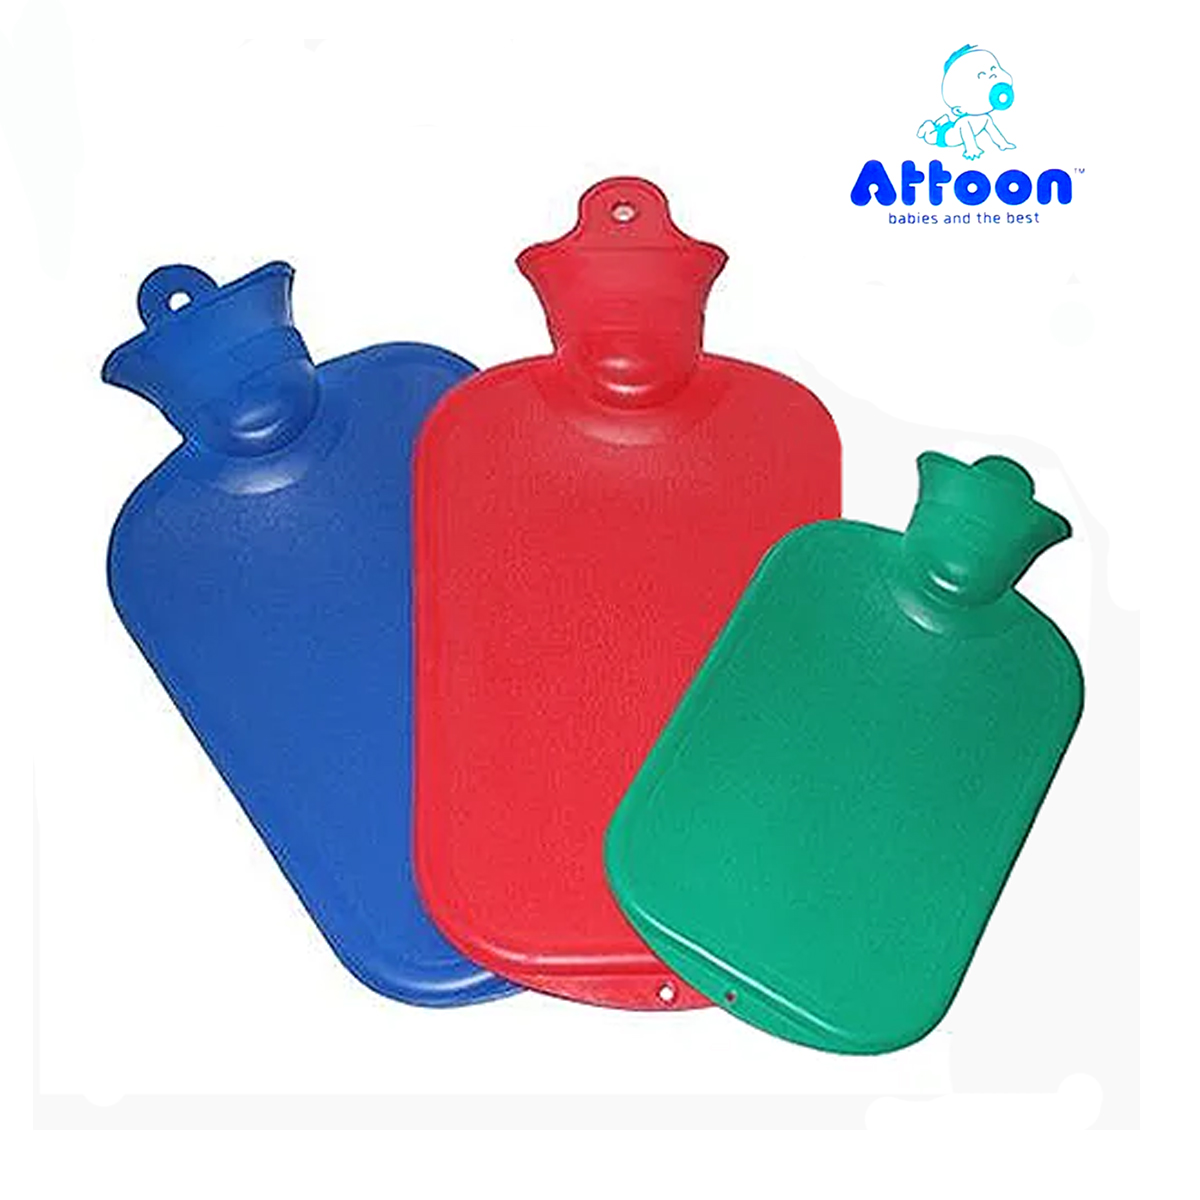 กระเป๋าน้ำร้อน 2ลิตร กันรั่วซึม2ชั้น ถุงน้ำร้อนยางธรรมชาติ (**จัดส่งแบบคละสี) บรรจุ 1 ชิ้น   ATTOON  Hot Water Rubber Bag For Body and  Pain Relief